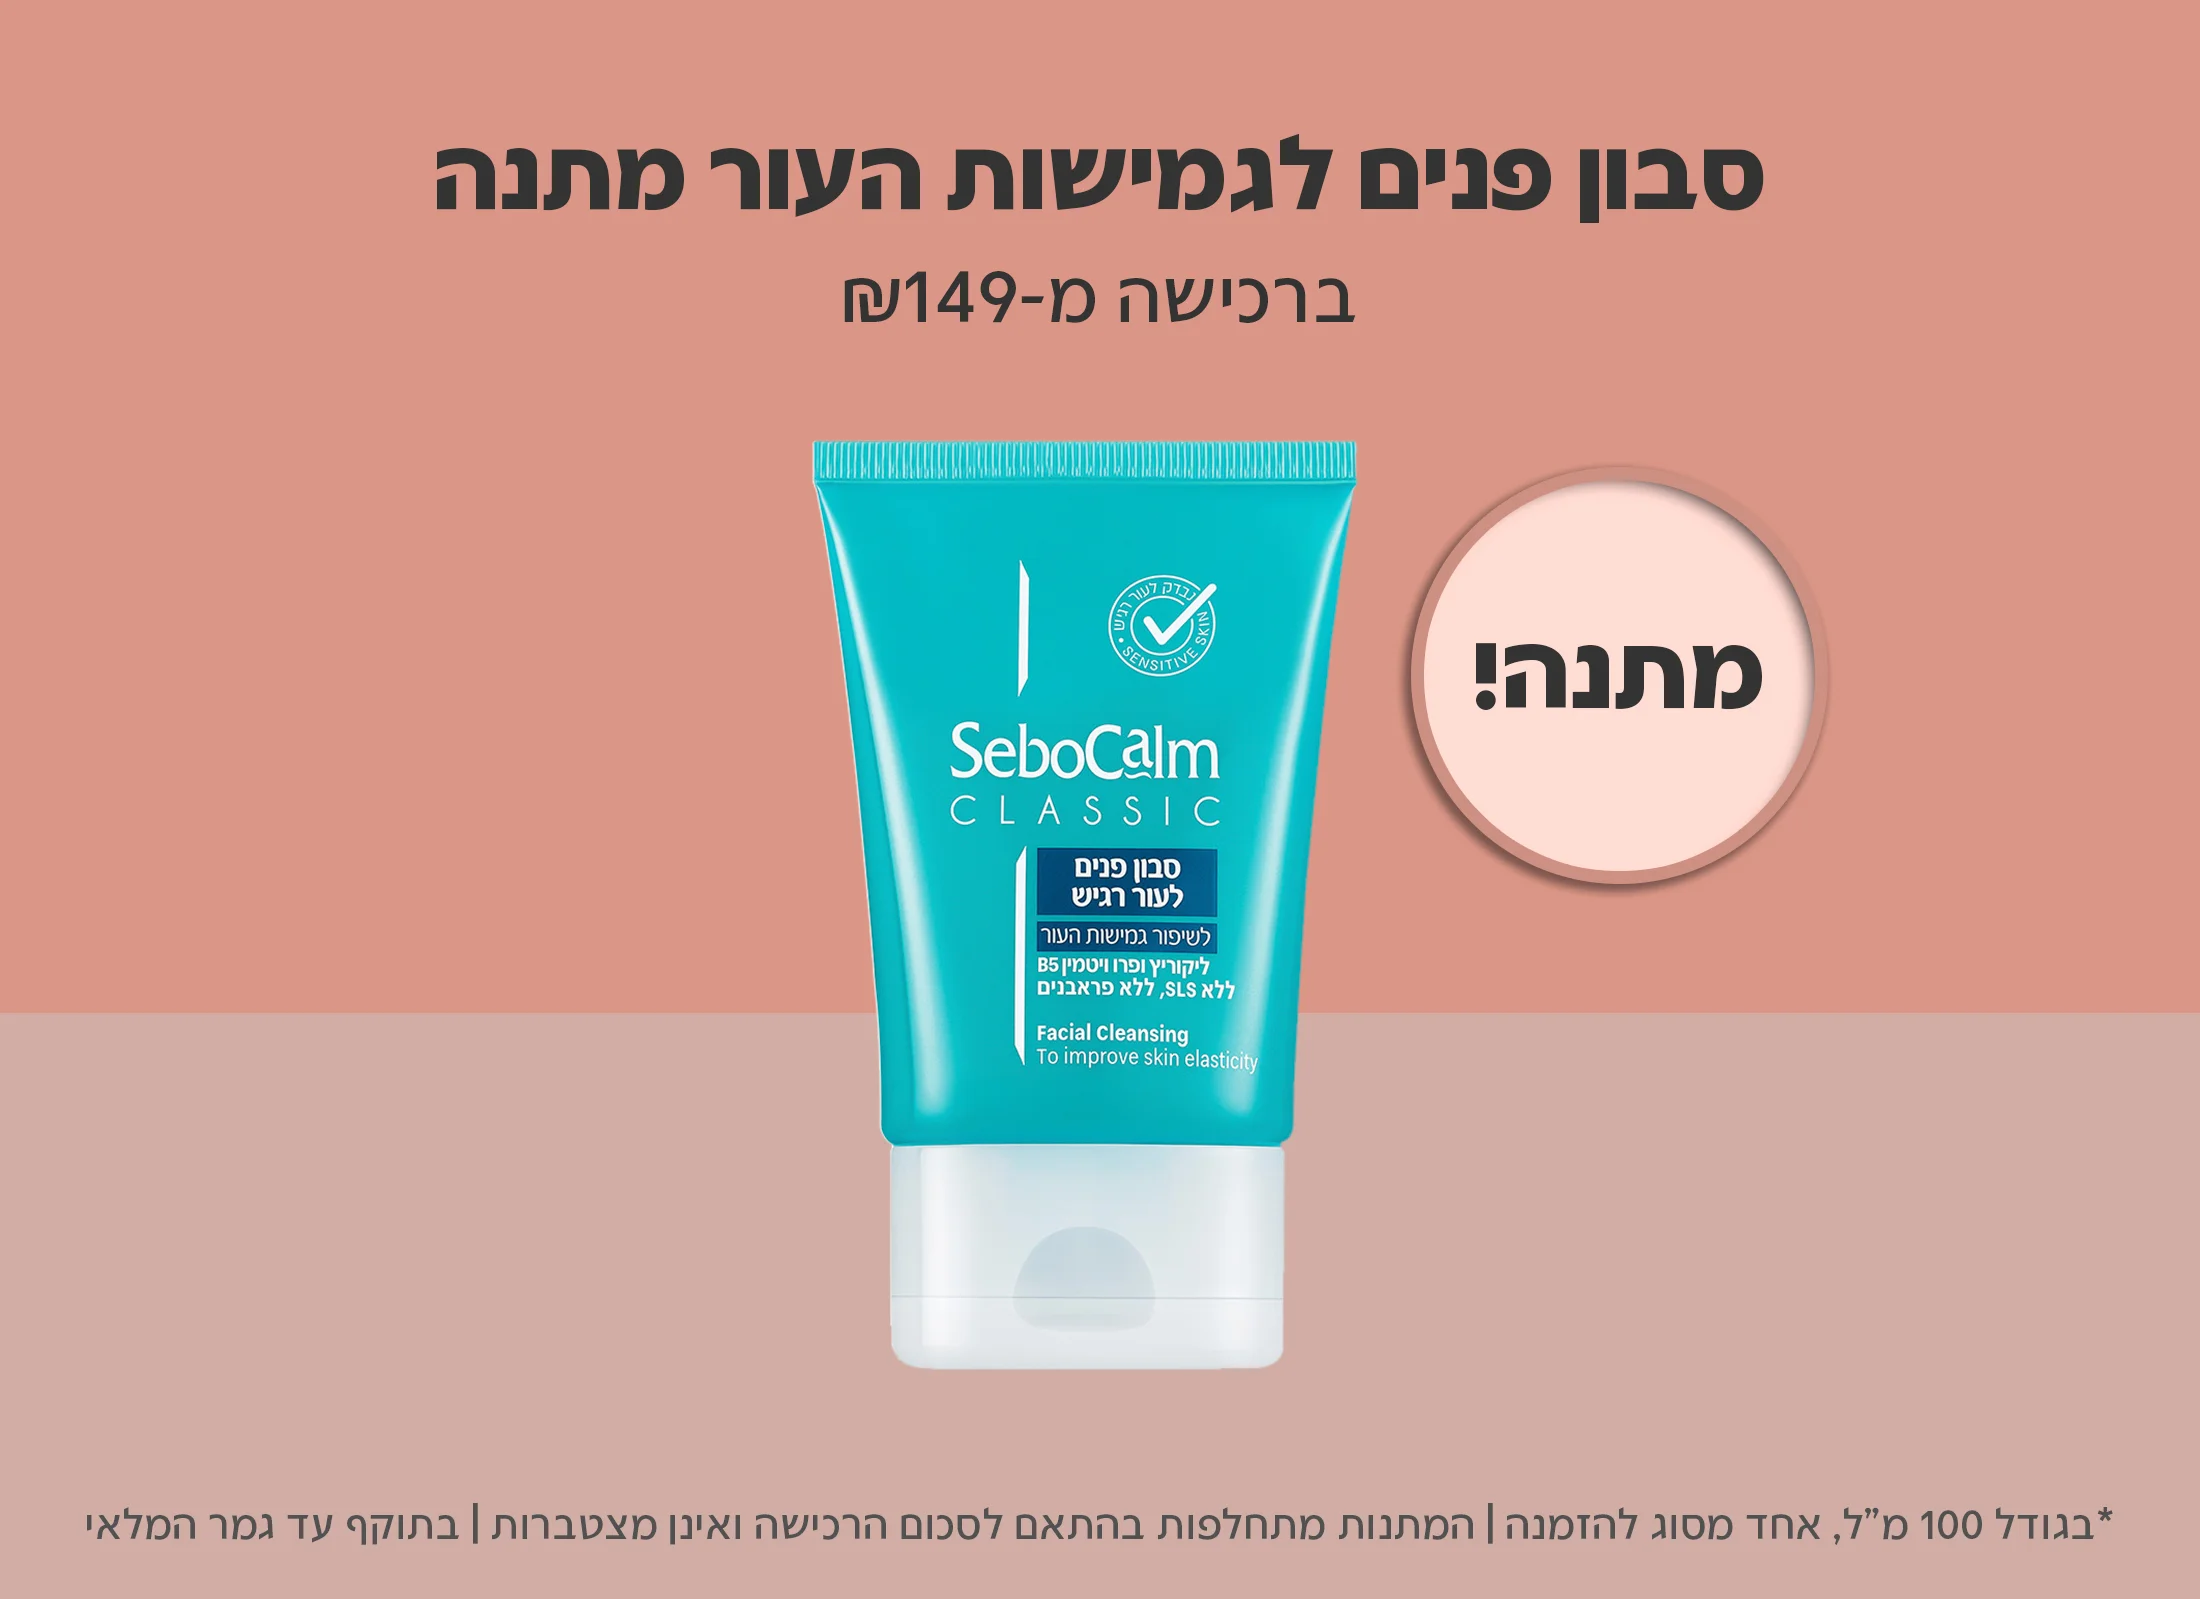 קונים ב-149 ש"ח ומקבלים קלאסיק סבון פנים לעור רגיש במתנה